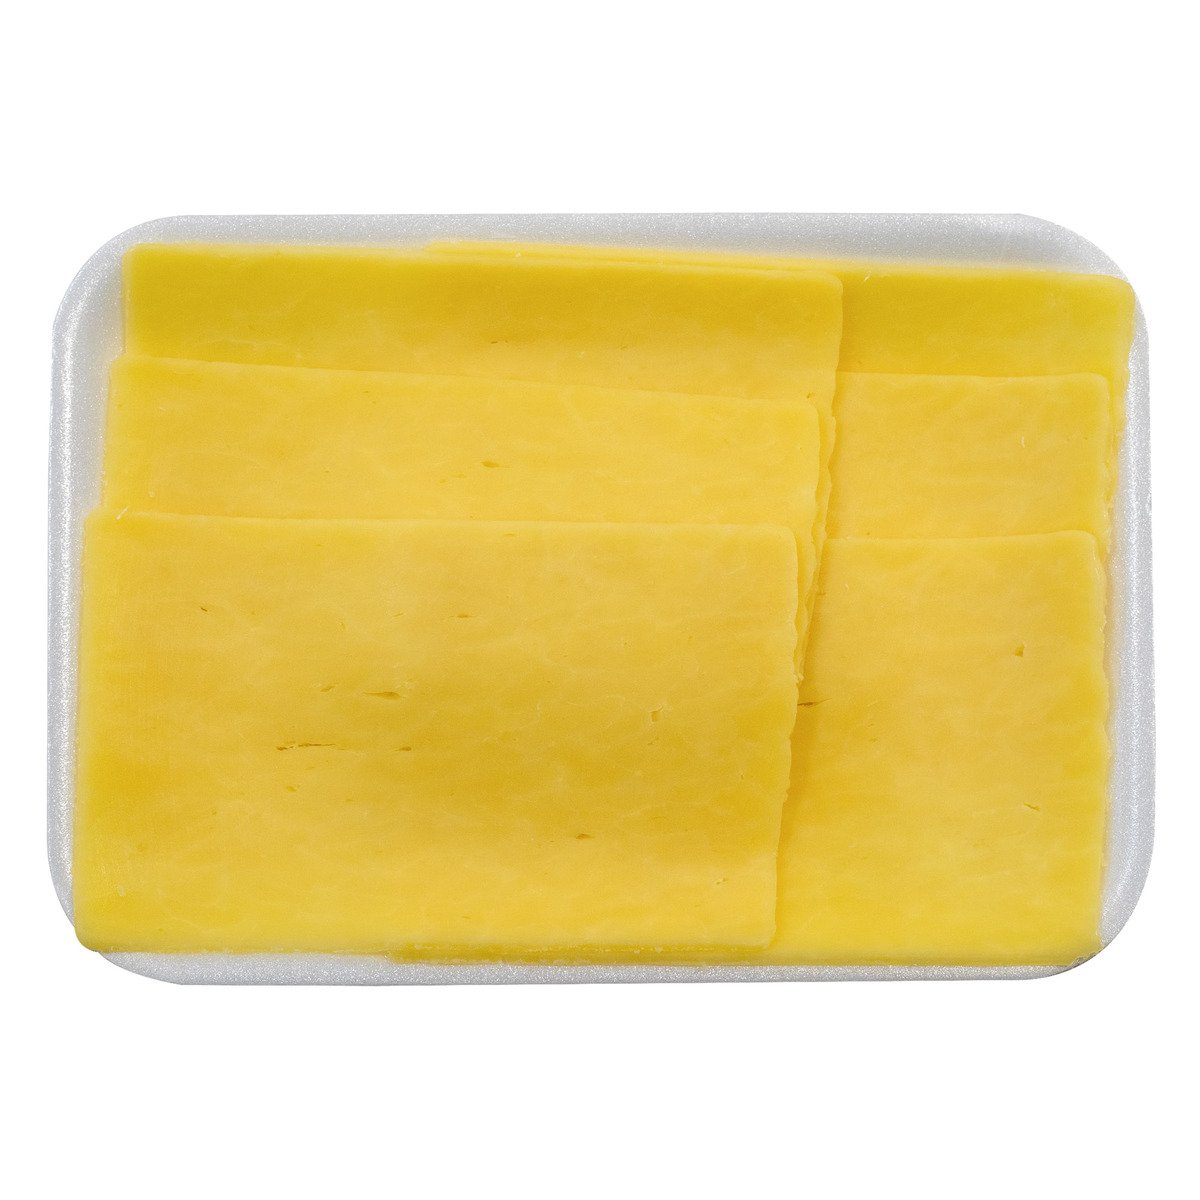 اشتري قم بشراء جبنة شيدر بيضاء ايرلندية 250 جم Online at Best Price من الموقع - من لولو هايبر ماركت English Cheese في الكويت